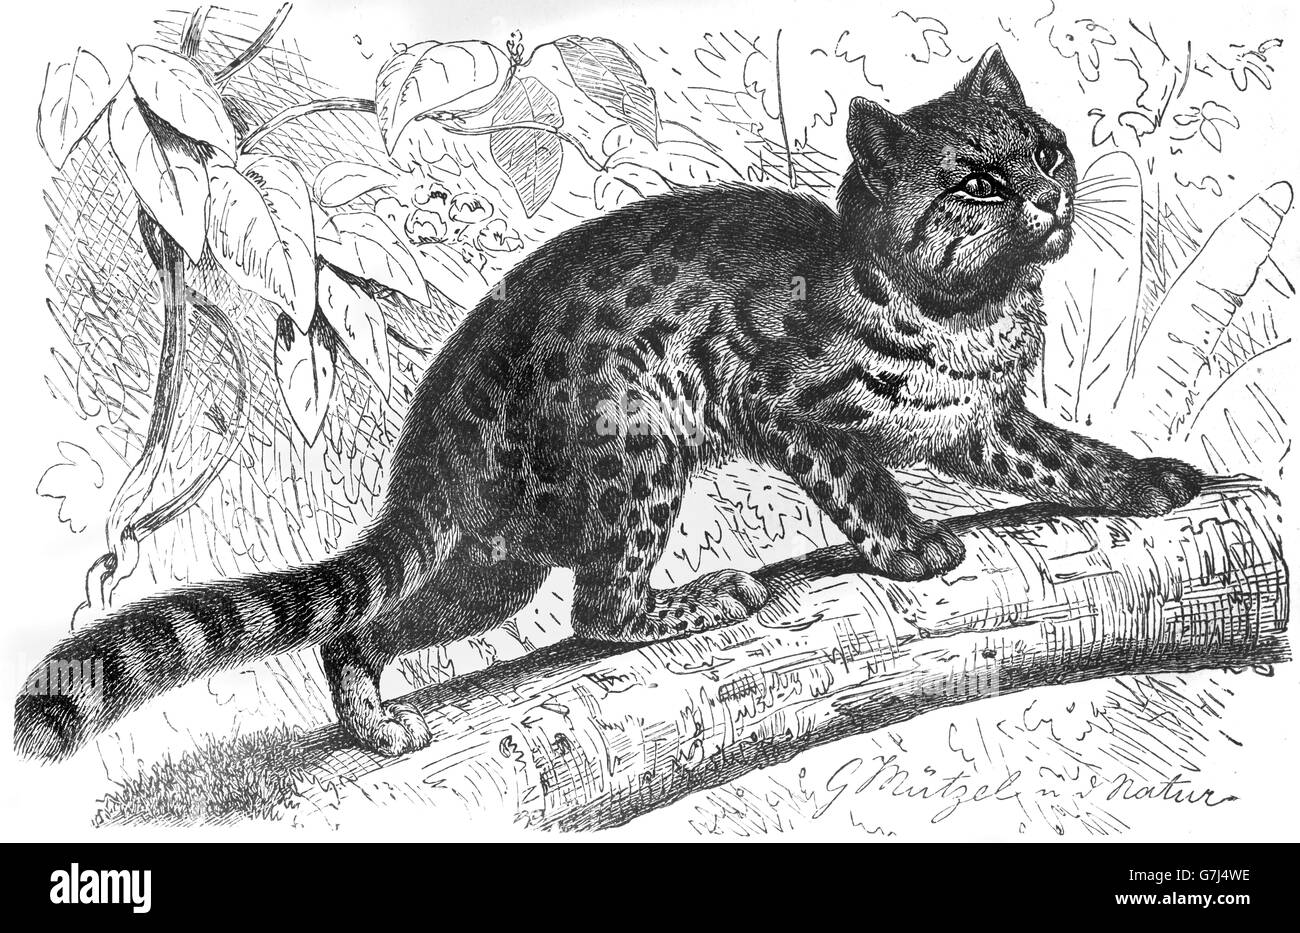 Oncilla, da Leopardo tigrinus, poco spotted cat, tigrillo, tiger cat, Feliformia, Felidae, illustrazione dal libro datato 1904 Foto Stock